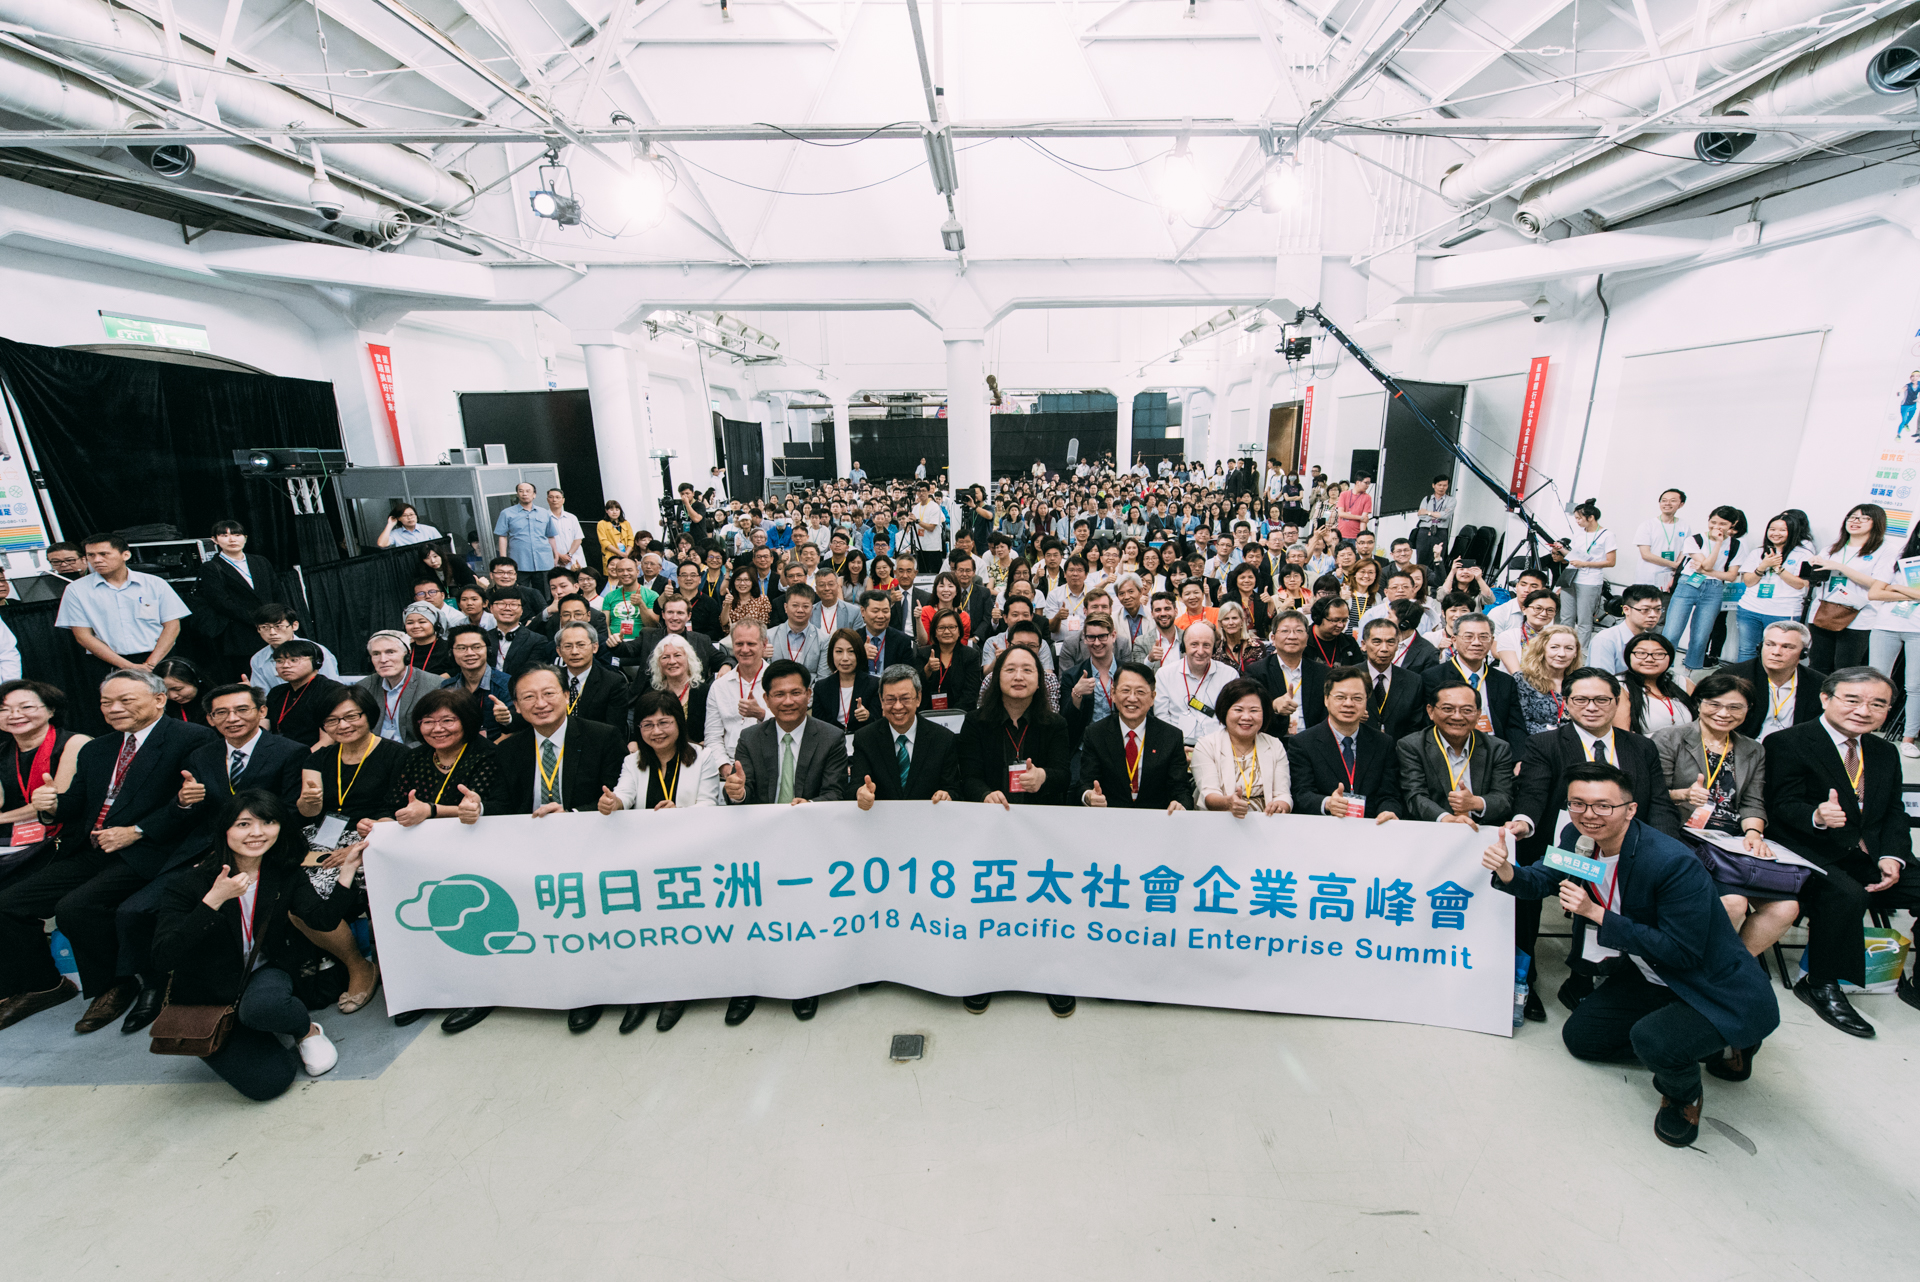 首屆亞太社會企業高峰會： 15 國講者齊聚臺灣史上最大社企盛會，為「明日亞洲」尋找改變的契機